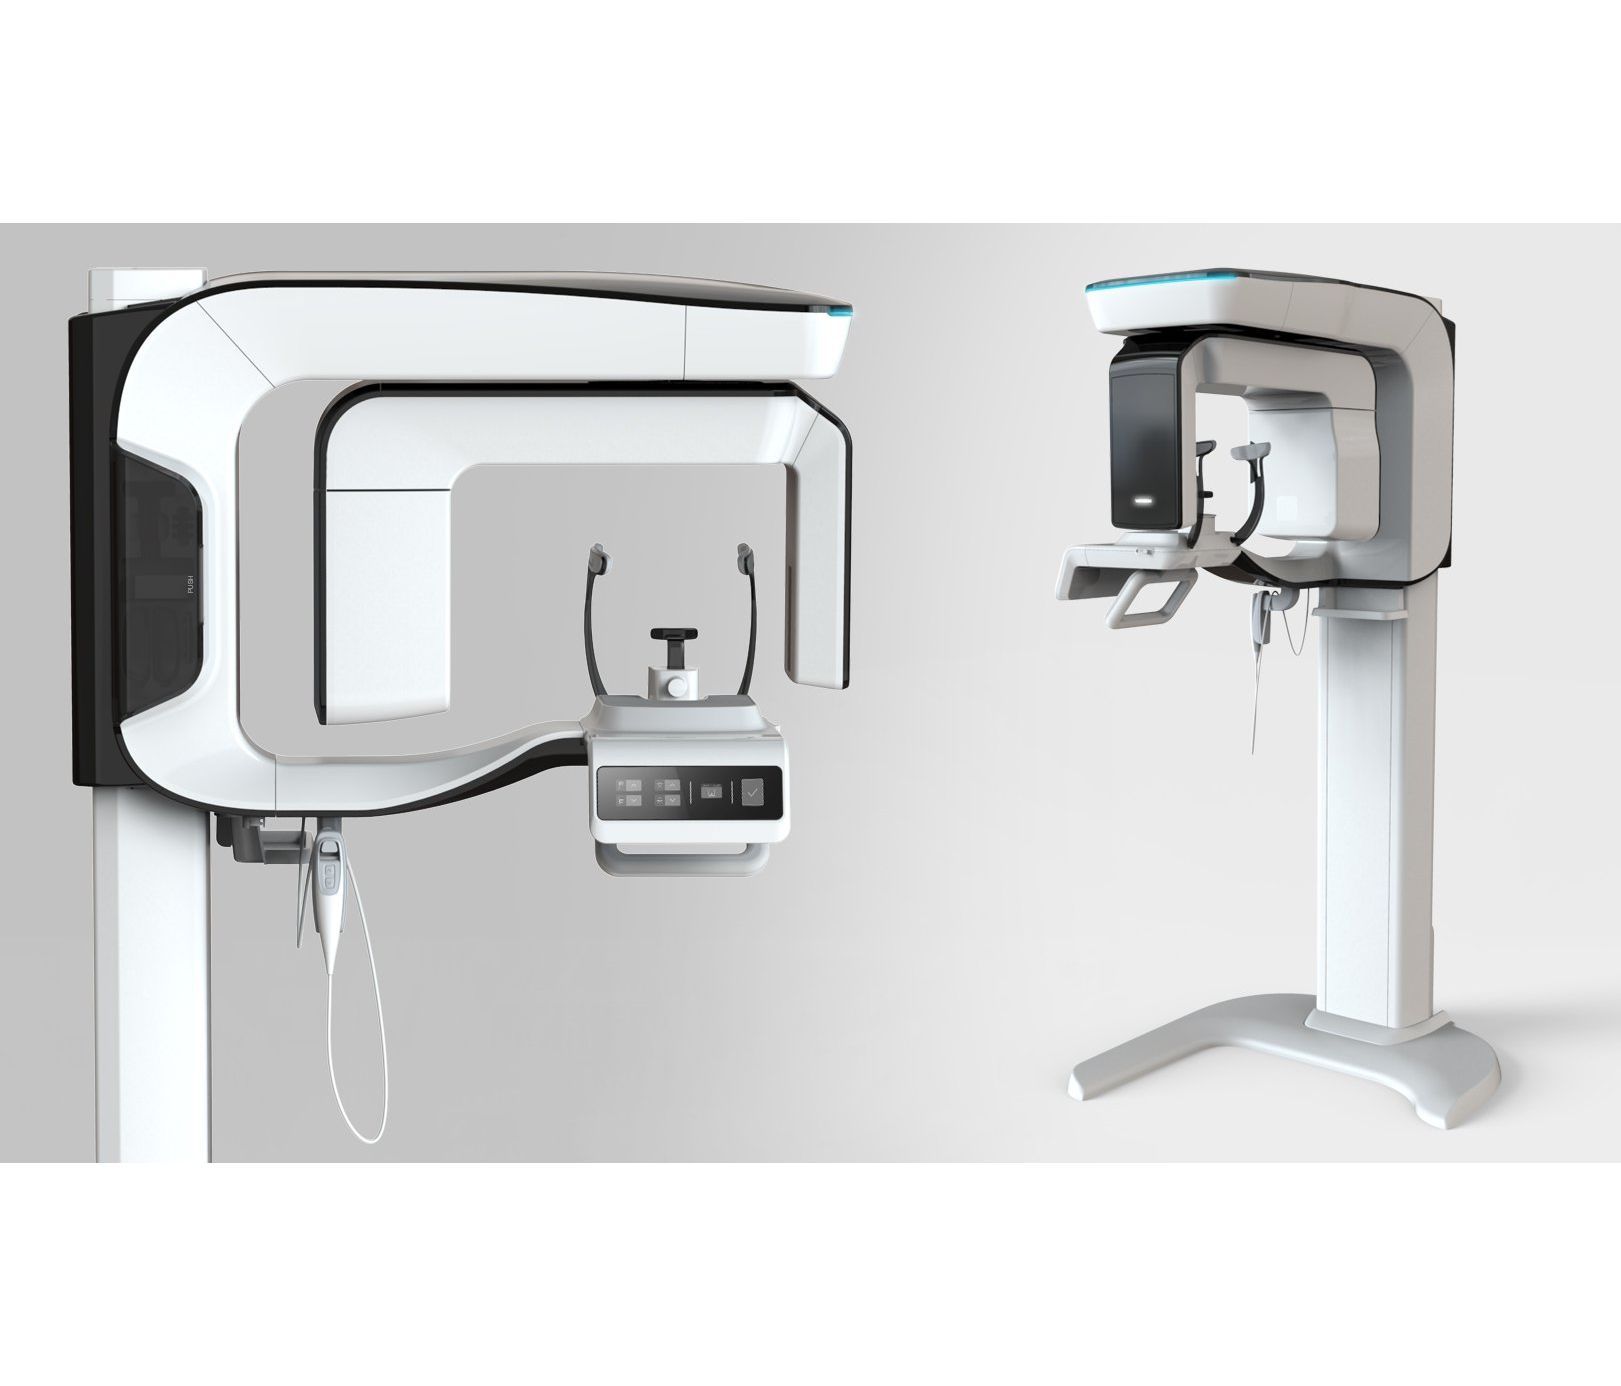 3D томограф Pax-i 3D панорамный, конусно-лучевой, FOV 12x9